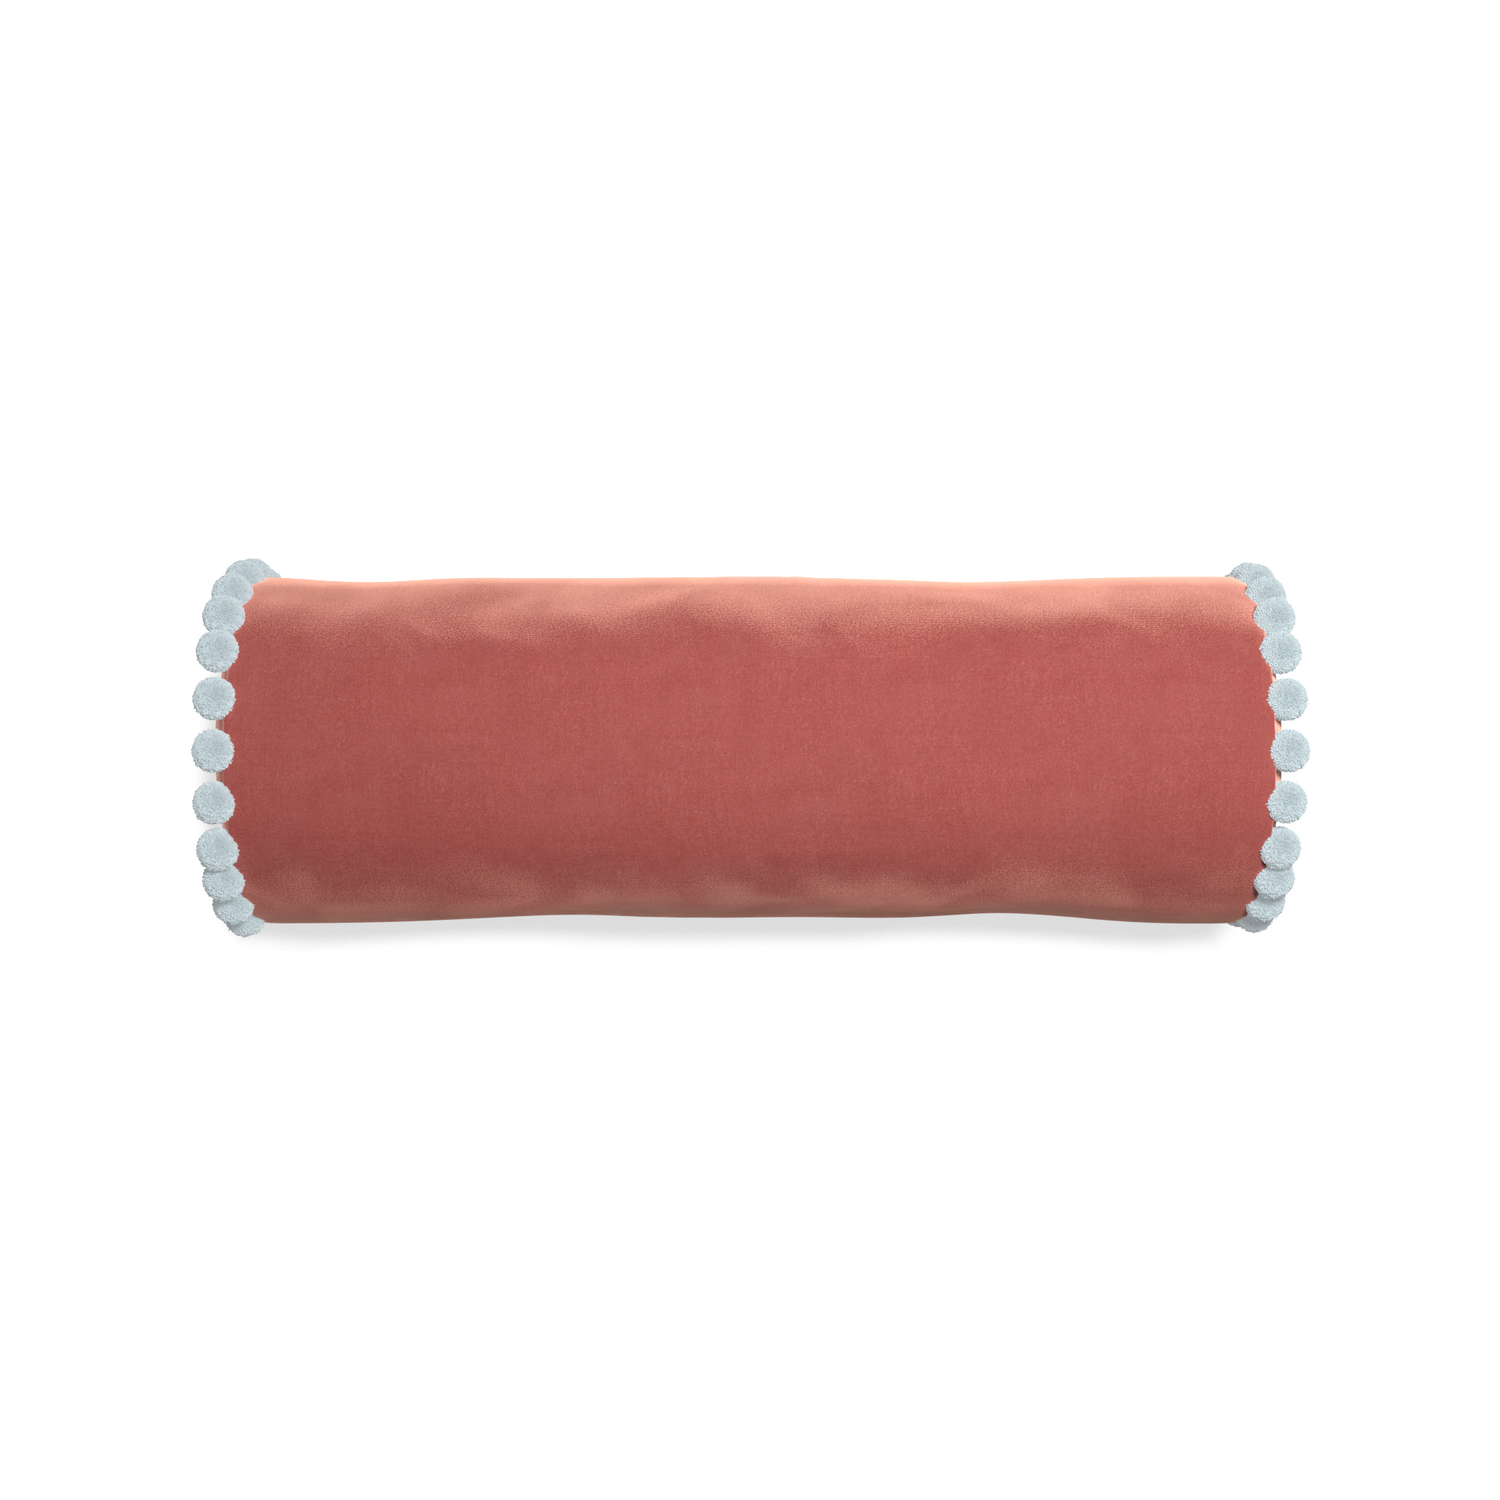 bolster coral velvet pillow with light blue pom poms